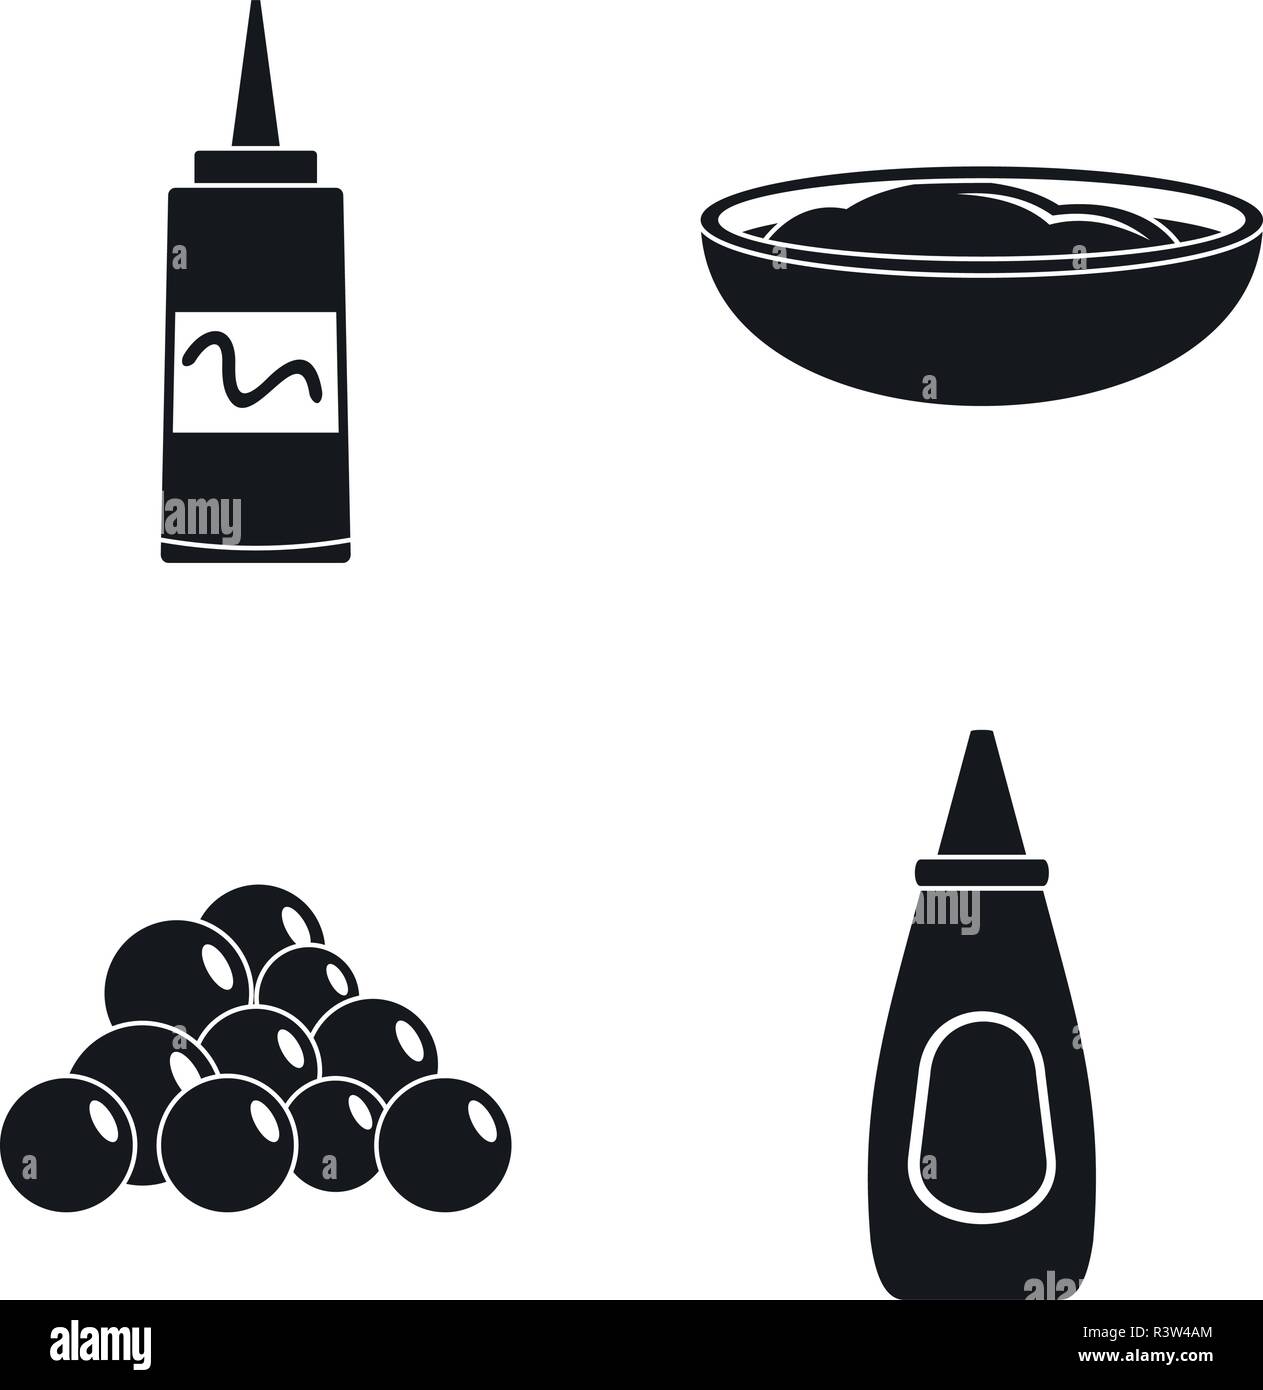 Senf sauce Flasche Symbole gesetzt. Einfache Abbildung: 4 Senf sauce Flasche Vector Icons für Web Stock Vektor